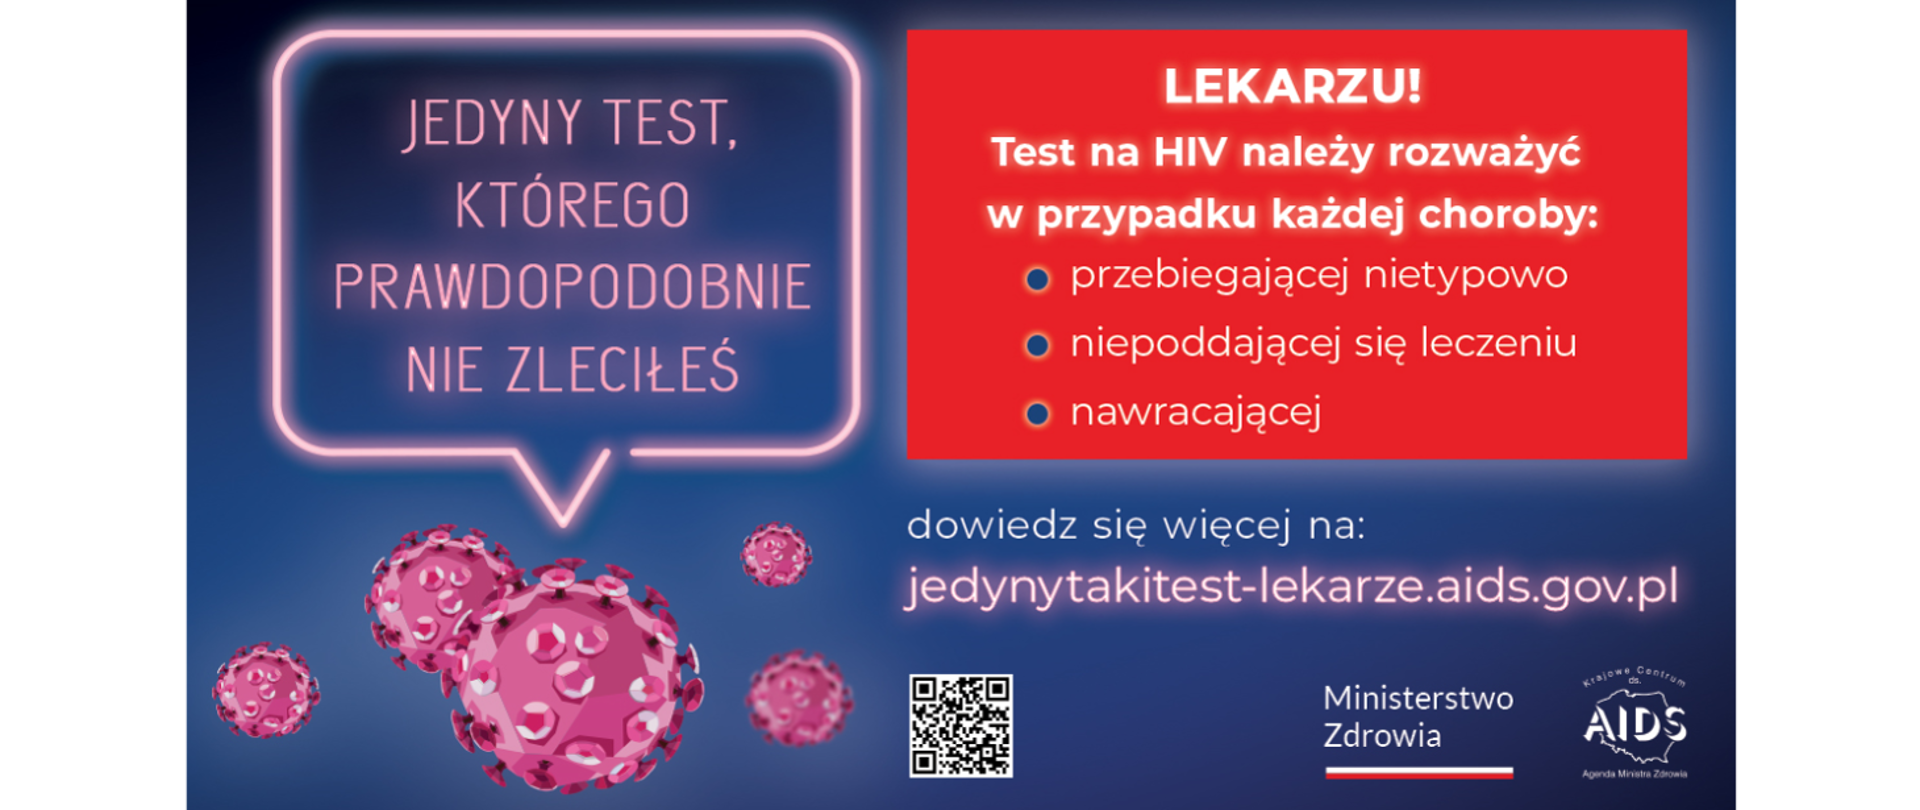 HIV - jedyny test, którego nie zleciłeś